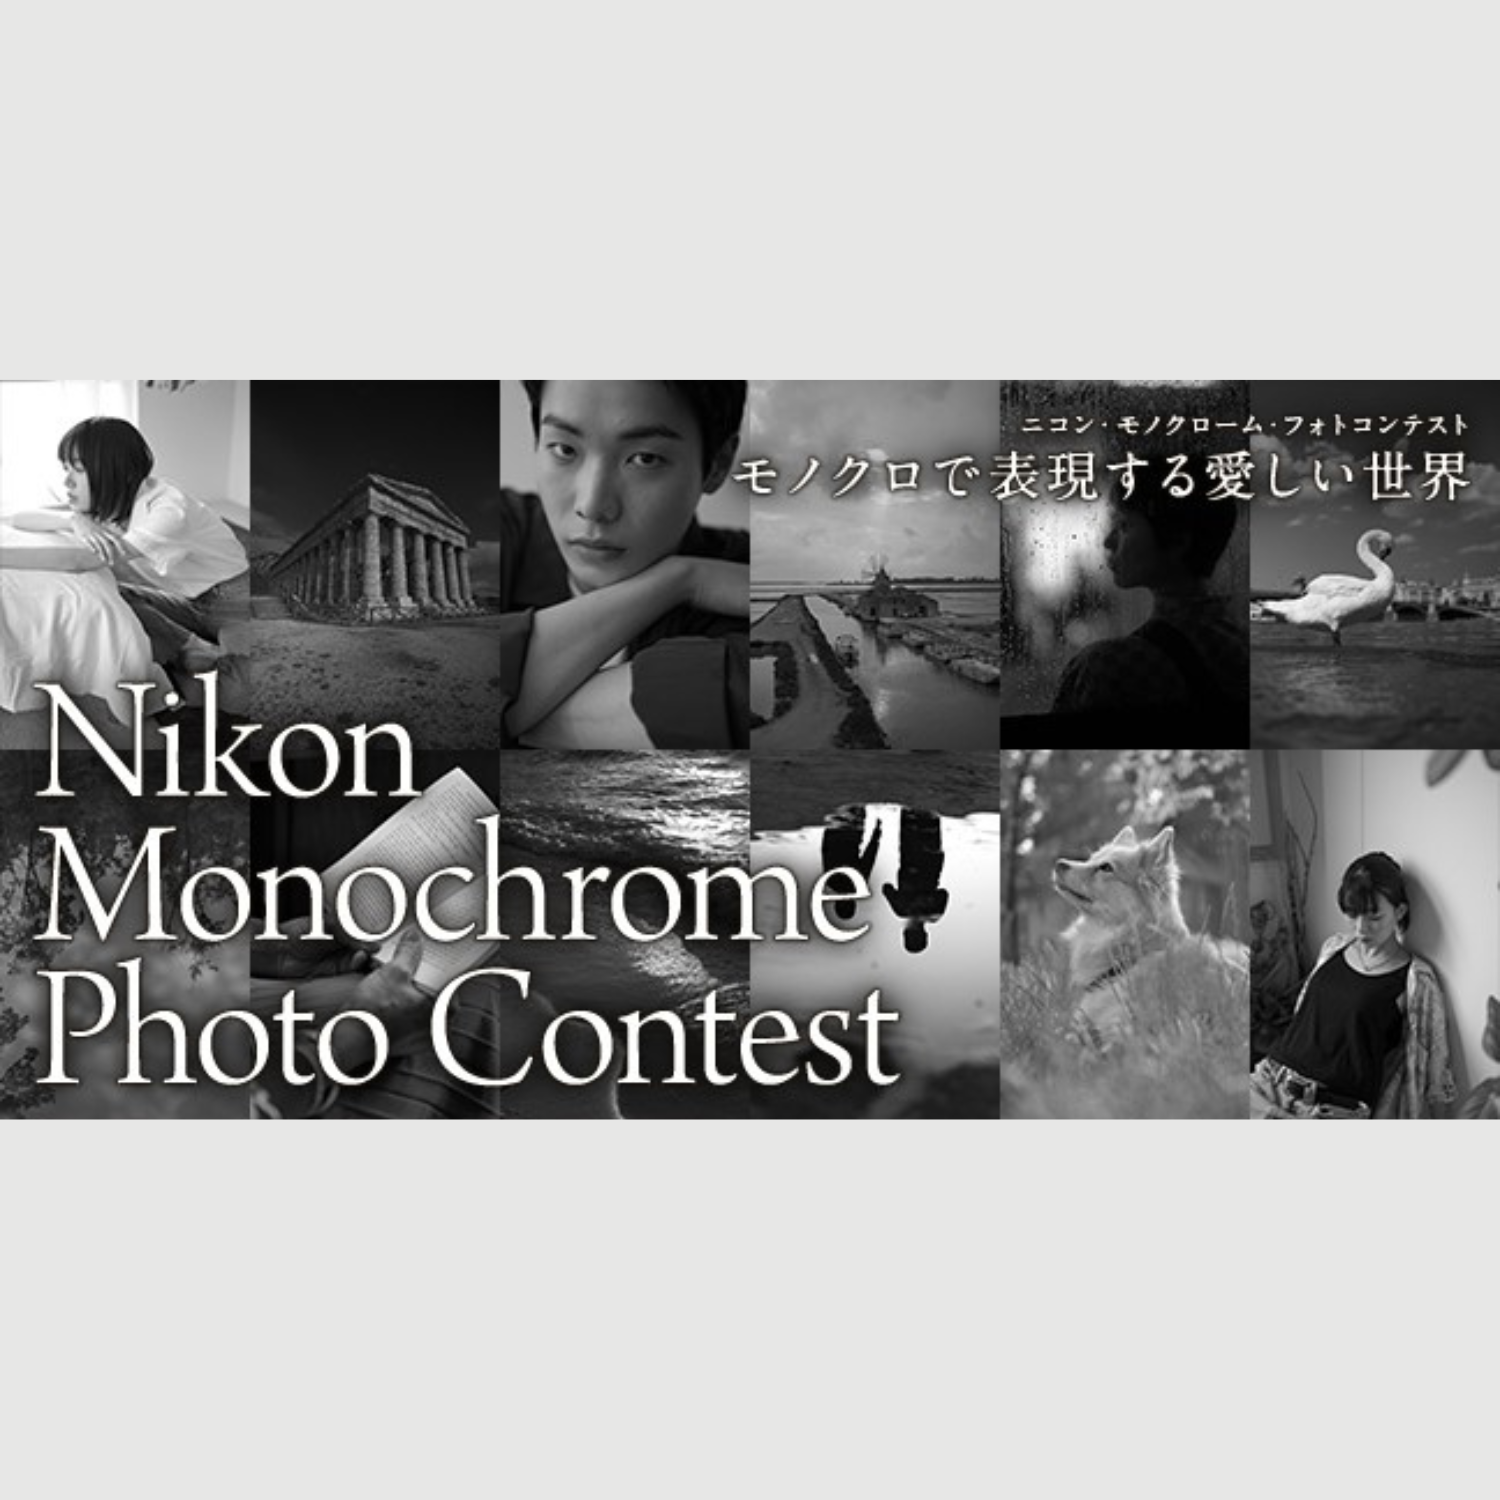 《3月12日まで》モノクロ写真のフォトコン開催中。Nikon Monochrome Photo Contest #モノクロで表現する愛しい世界